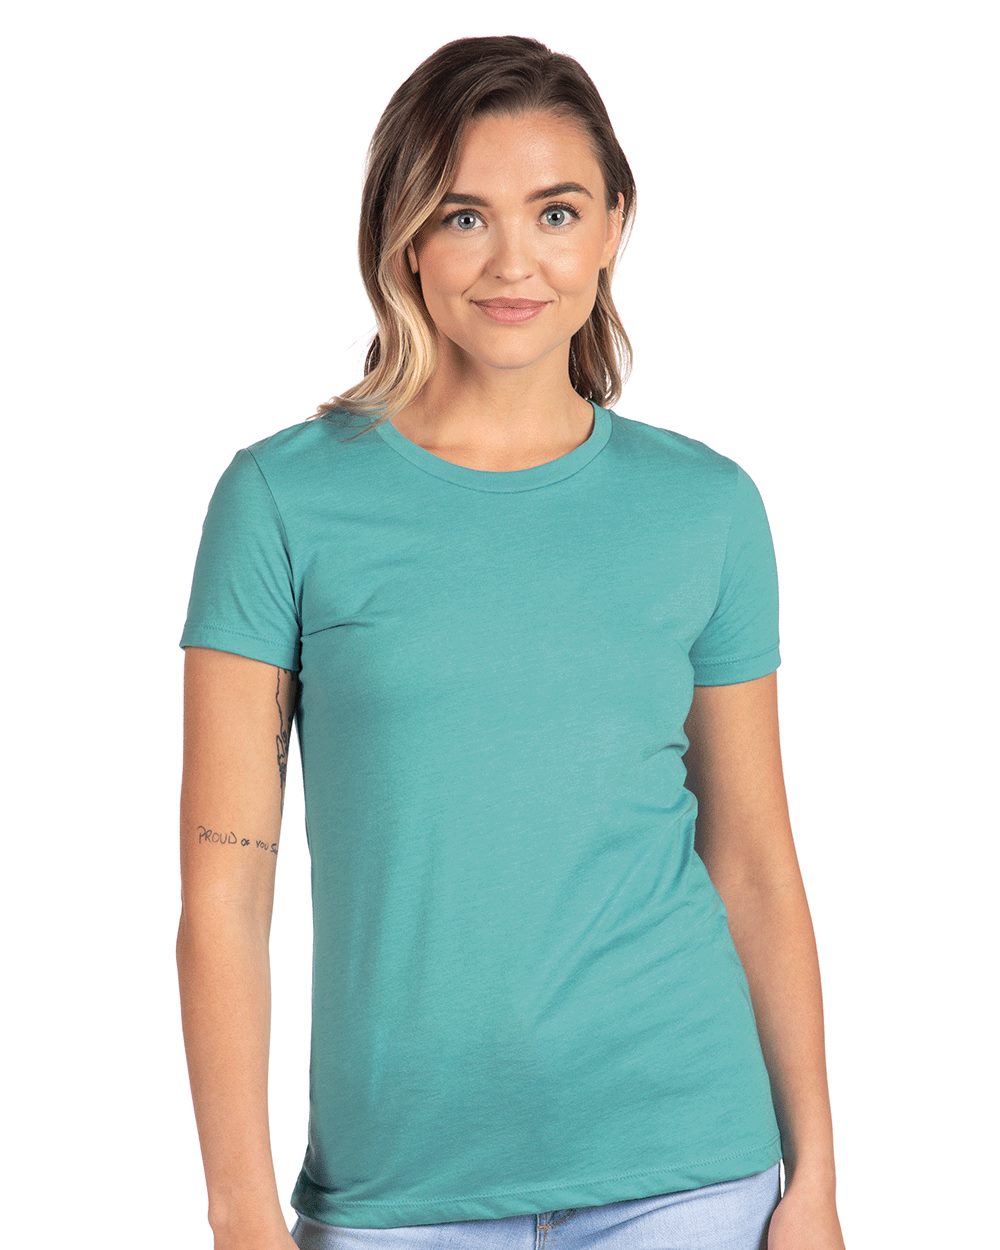 Next Level - Women’s CVC T-Shirt - 6610- XS - 3XL